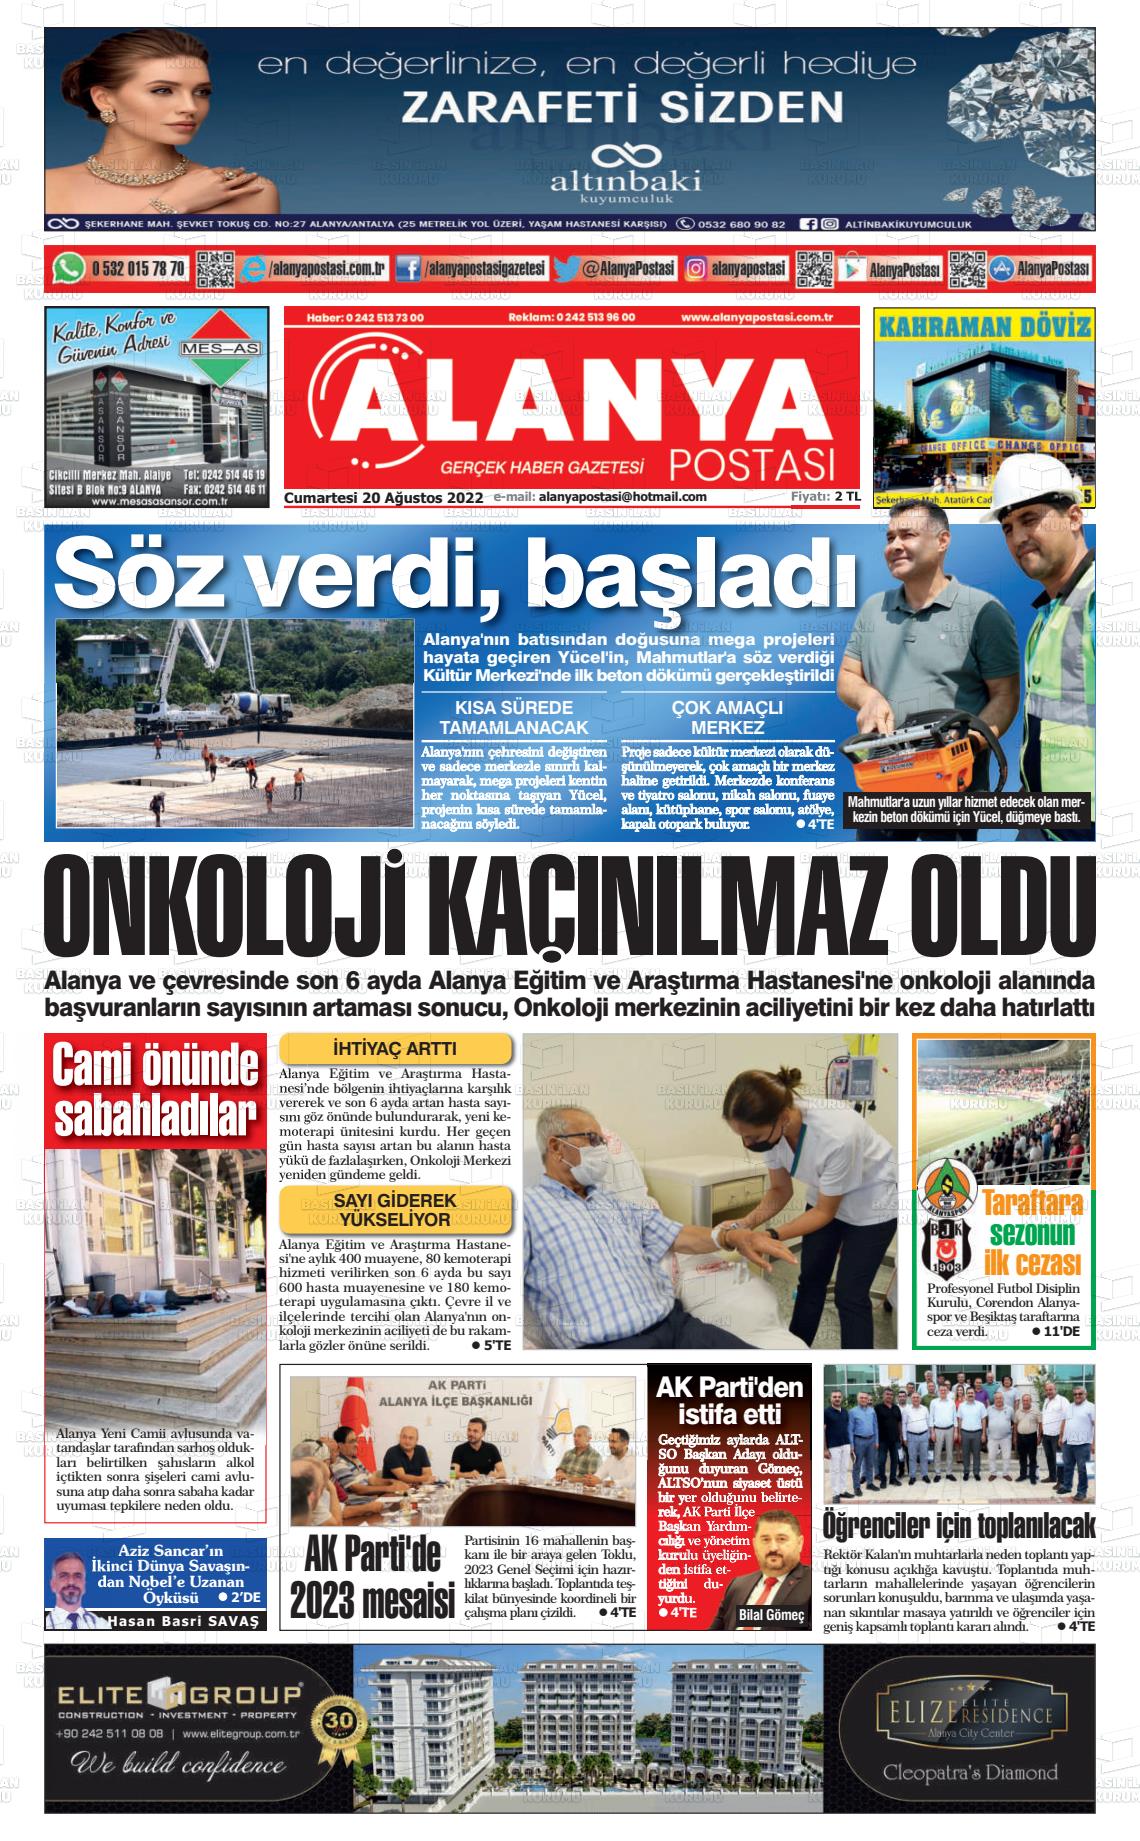 20 Ağustos 2022 Alanya Postası Gazete Manşeti